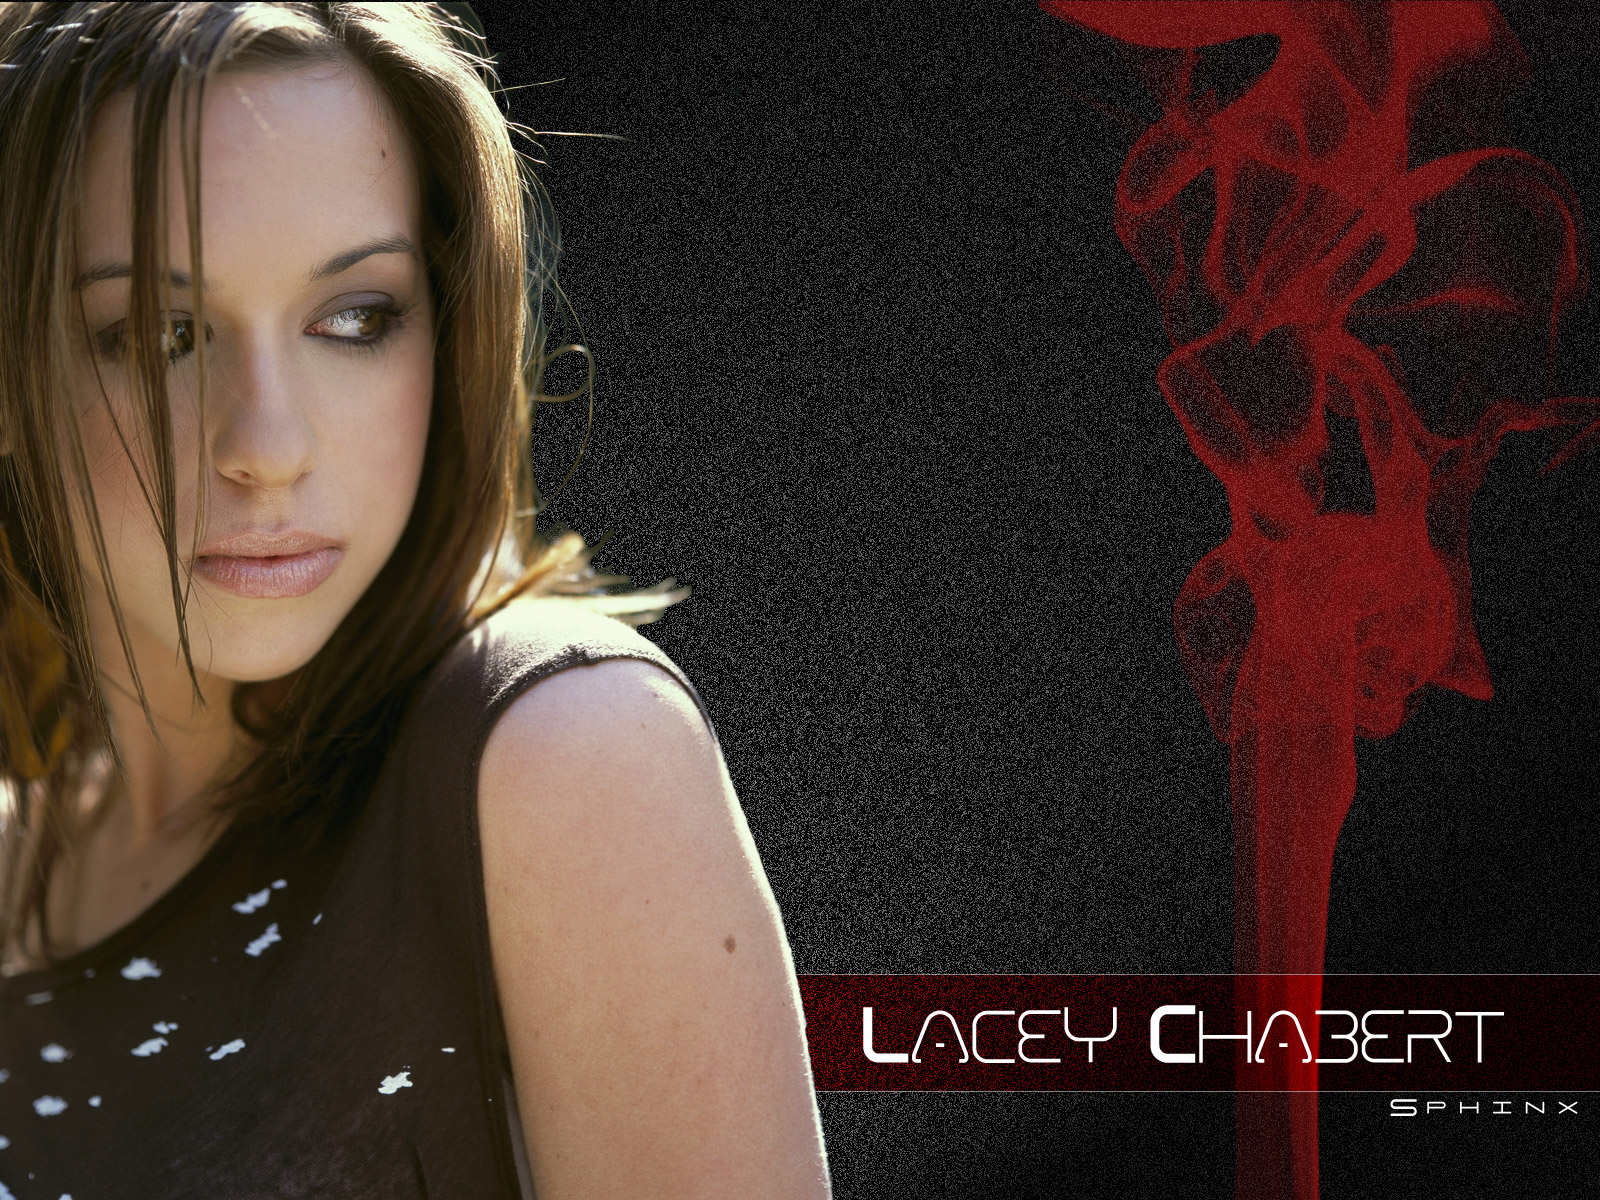 Lacey chabert 7